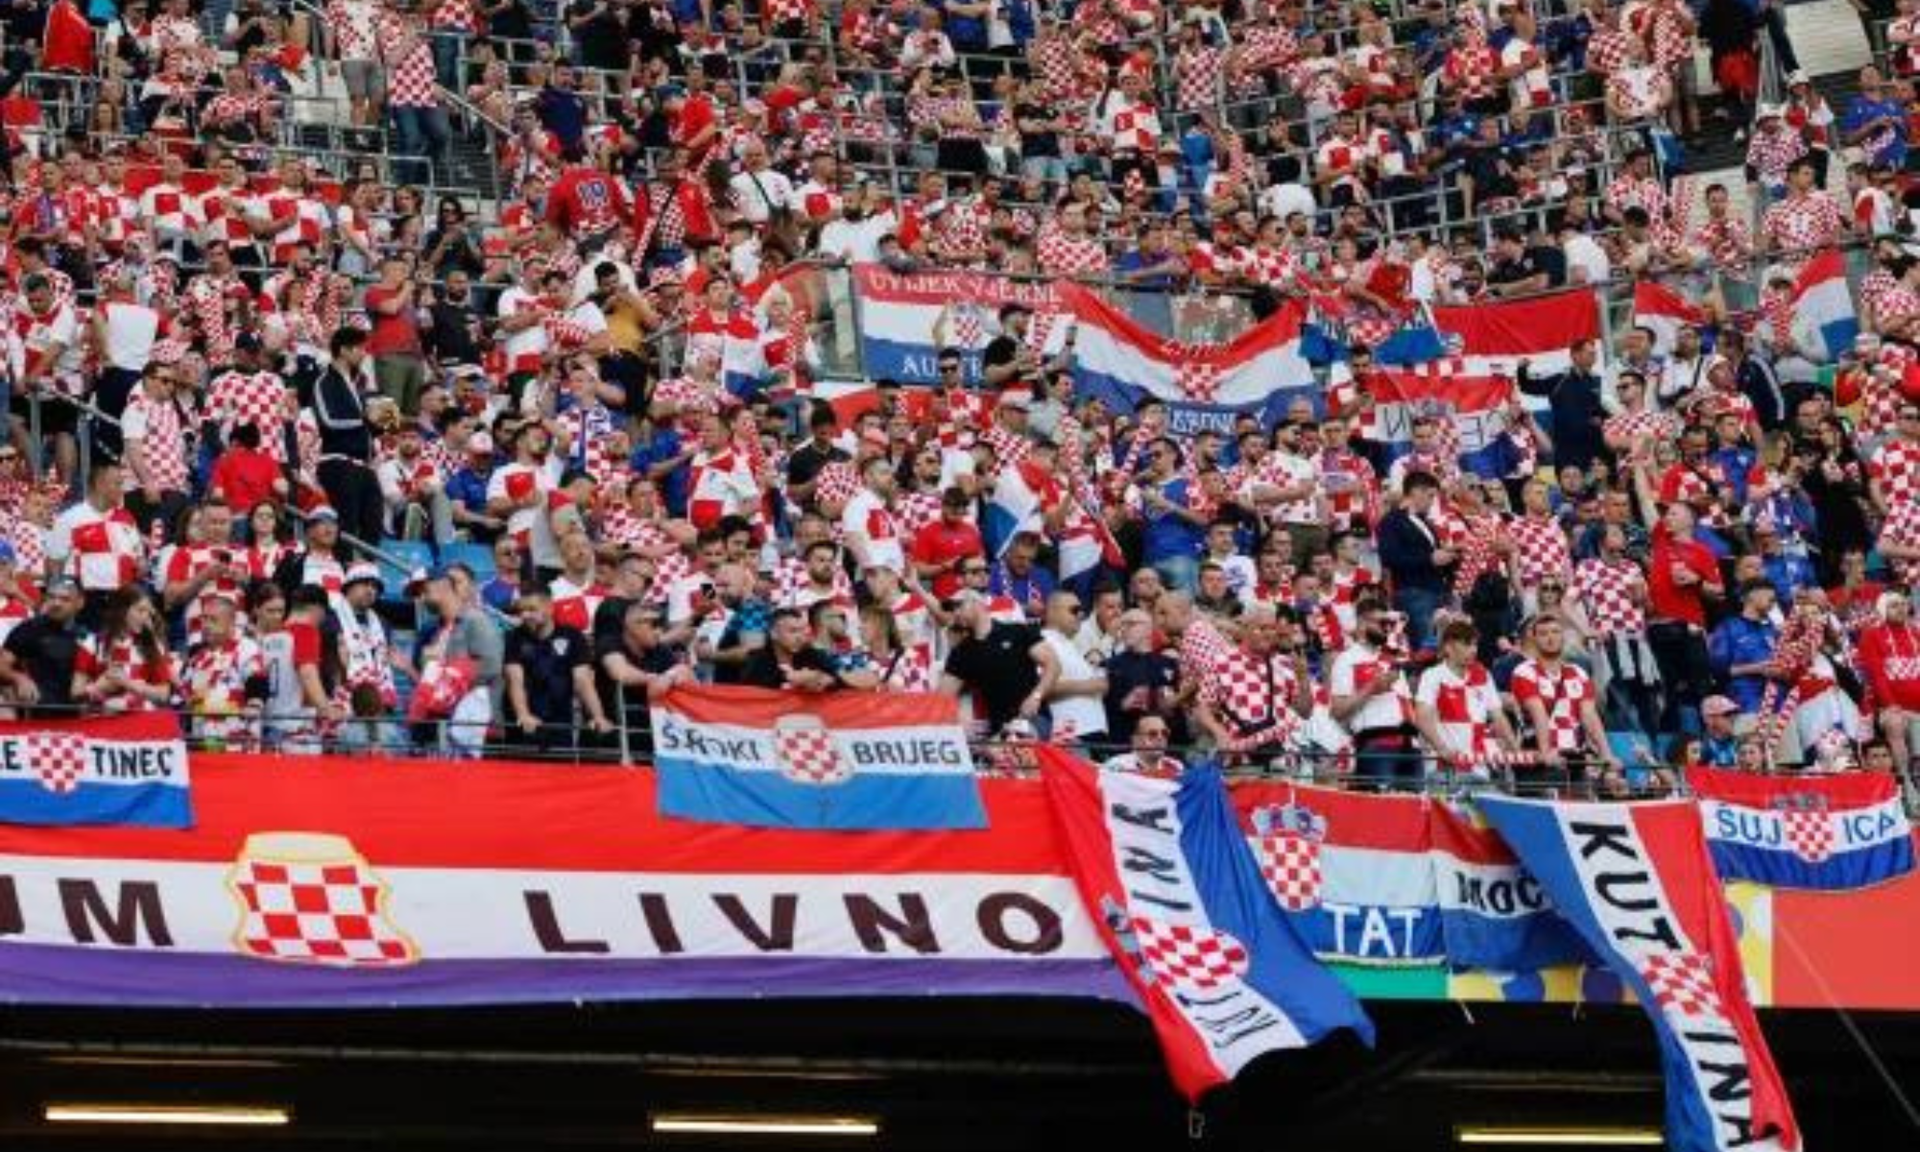 Cổ động viên Croatia được cho là đã xúc phạm Serbia trên khán đài tối 19/6.